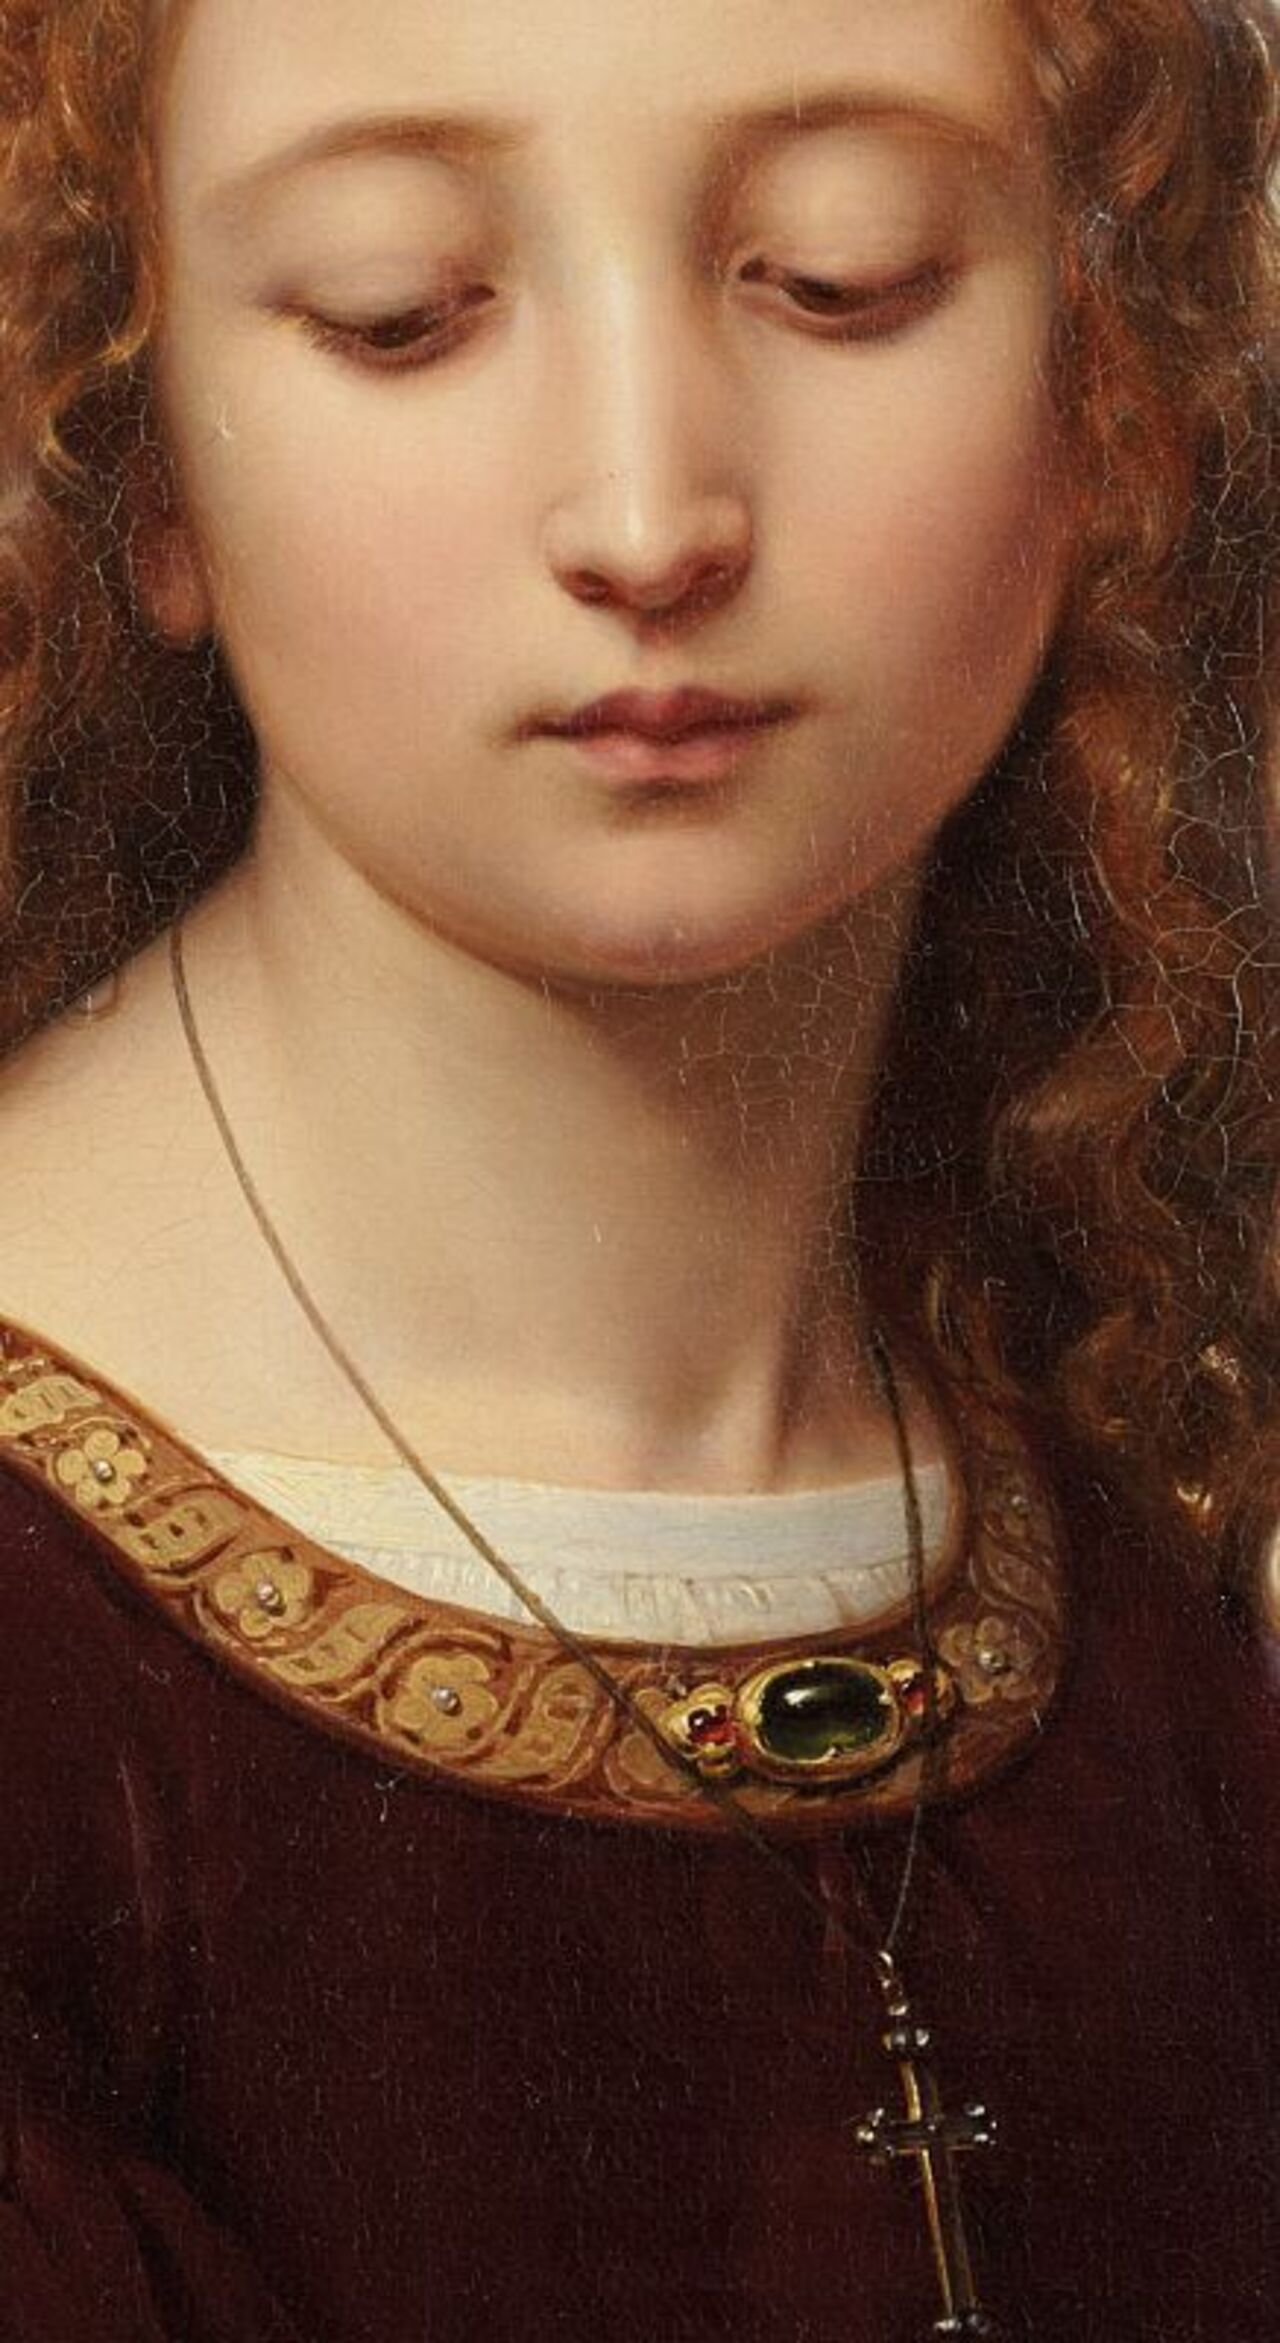 Desde #Artelandia queremos desearos un feliz día con esta obra:
Ernst #Deger, Portrait of a Young Woman, 1853, detail http://t.co/xOgvnPMpIF